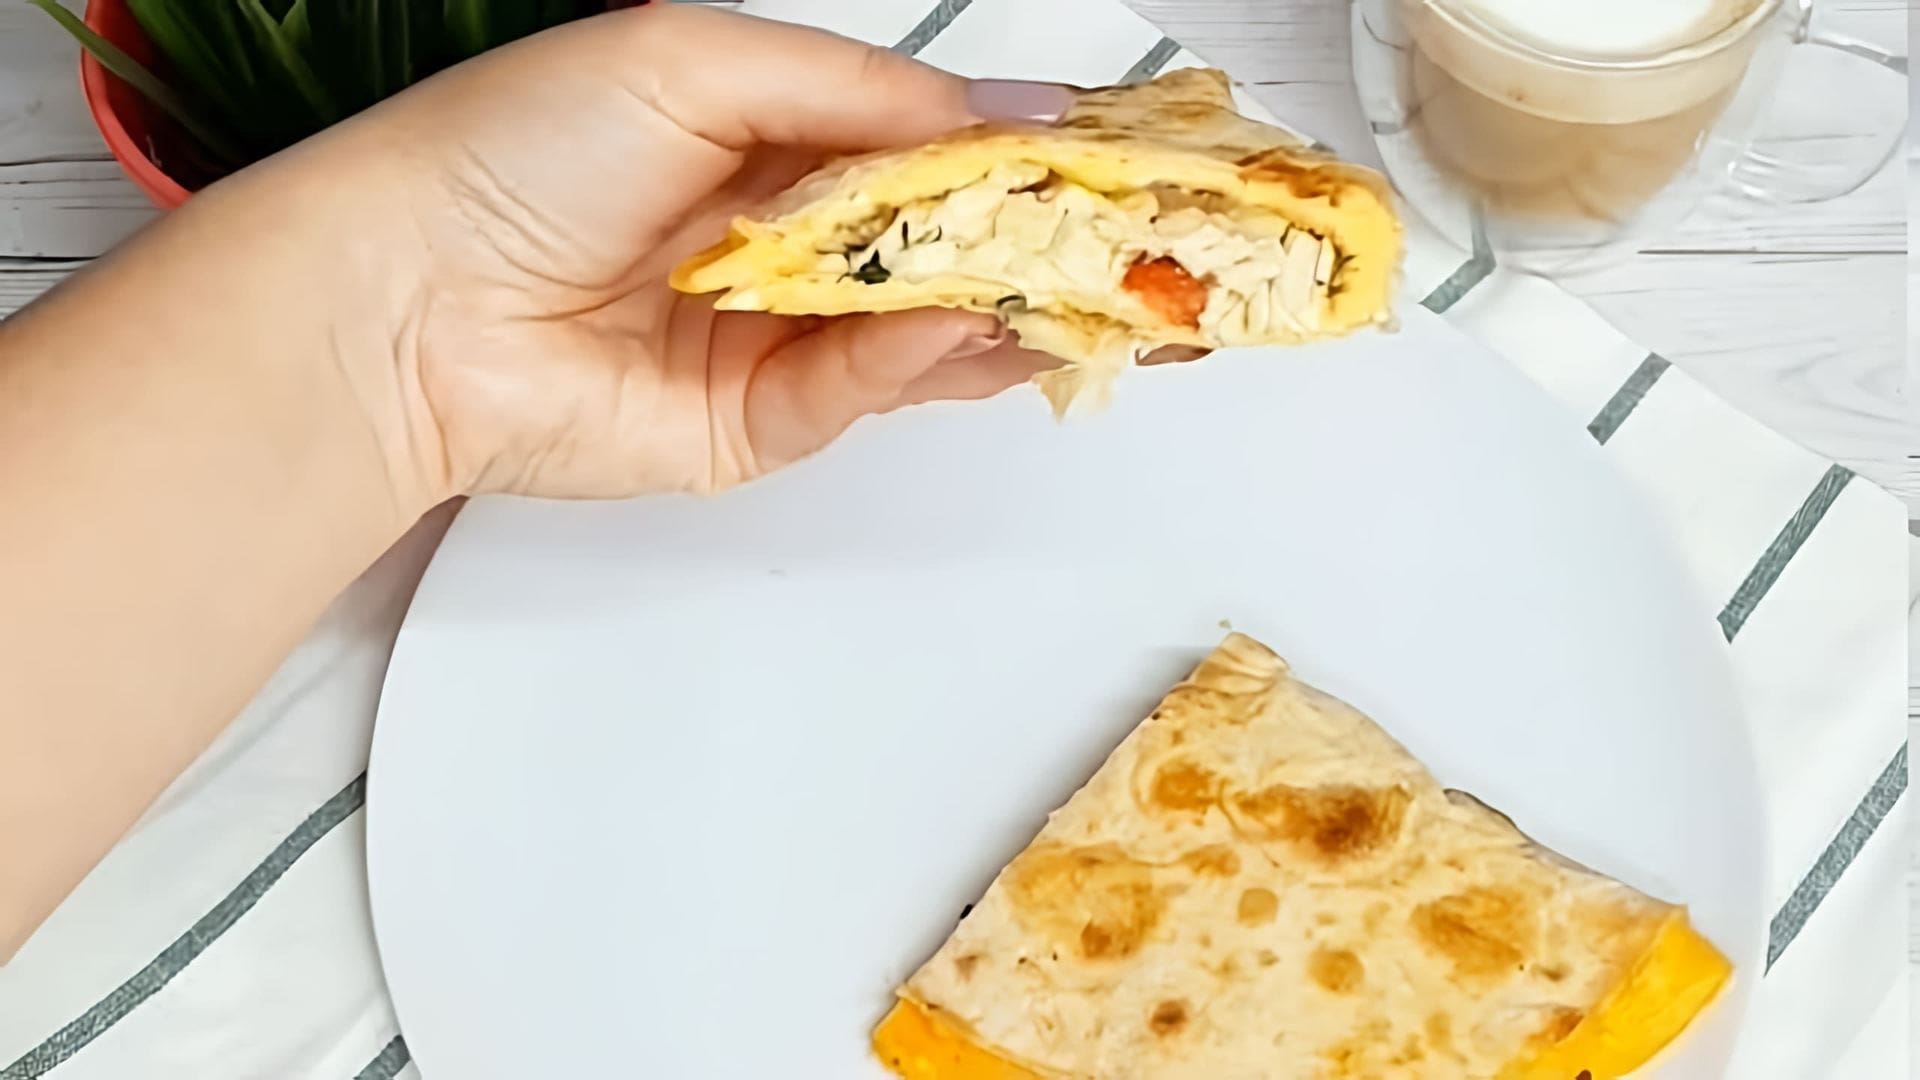 "Самый вкусный завтрак: омлет в лаваше" - это видео-ролик, который демонстрирует процесс приготовления вкусного и питательного завтрака